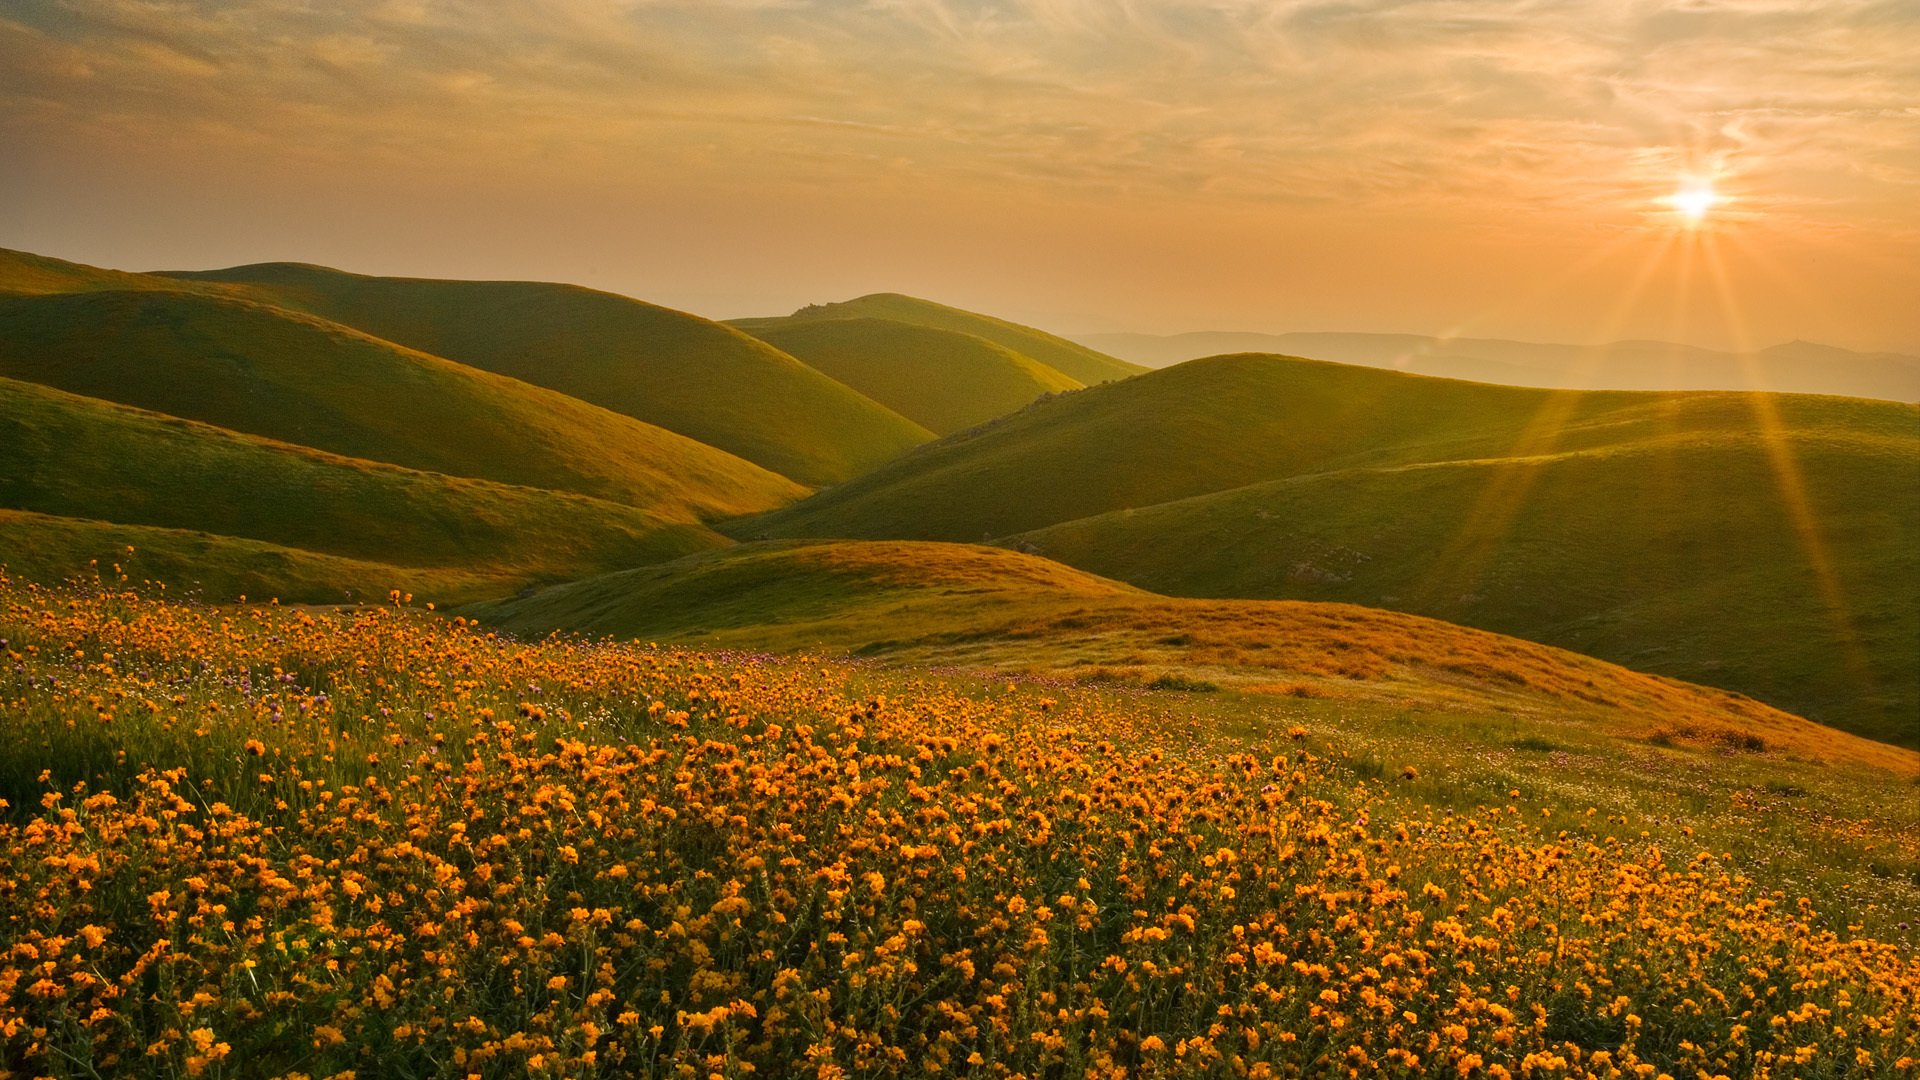 сьерра-невада калифорния пейзаж холмы цветы солнце закат